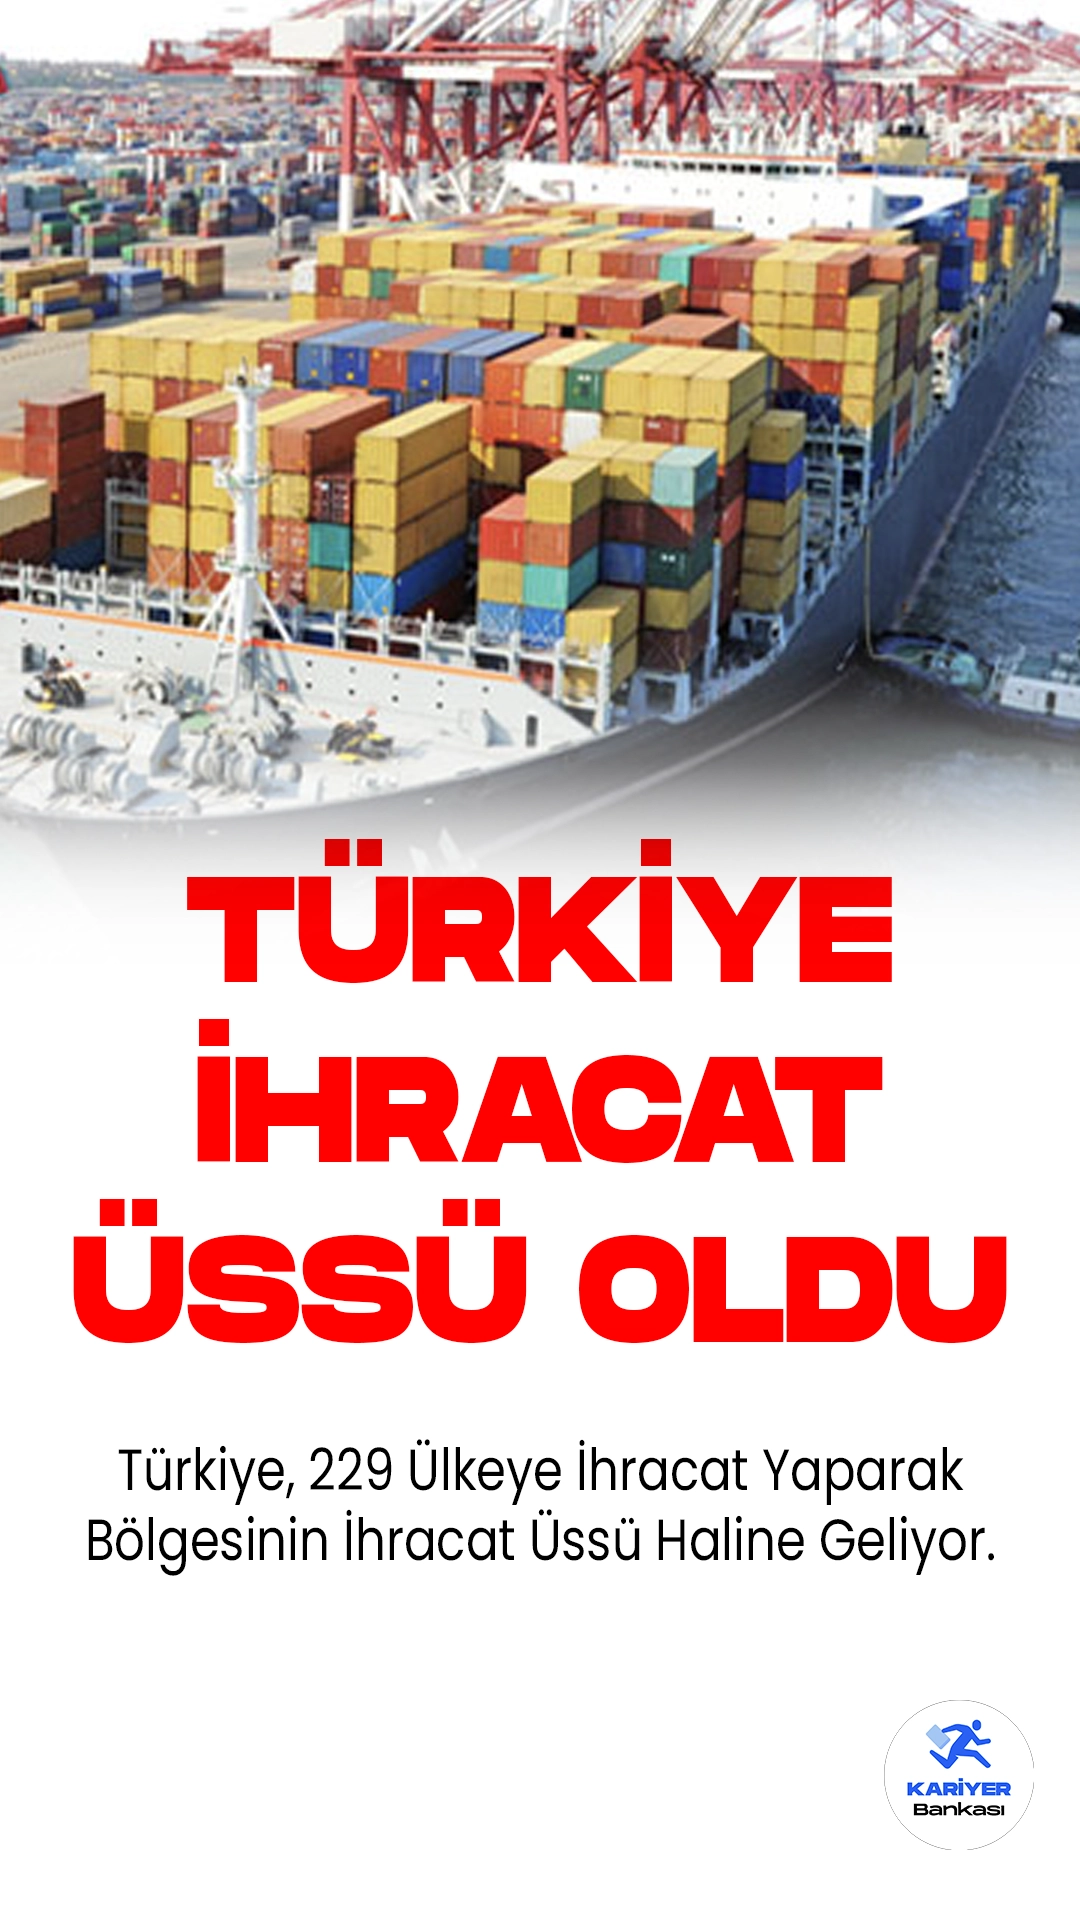 Türkiye, 229 Ülkeye İhracat Yaparak Bölgesinin İhracat Üssü Haline Geliyor.Türkiye, başarıyla bölgesinin ihracat üssü olma hedefine ulaşarak dünyanın en zor köşelerine bile ihracat gerçekleştirmiştir. Ticaret Bakanlığı, dış ticaret dengesini gözeterek sürdürülebilir ihracat modeli çerçevesindeki çalışmaların hızla devam ettiğini açıklamıştır.